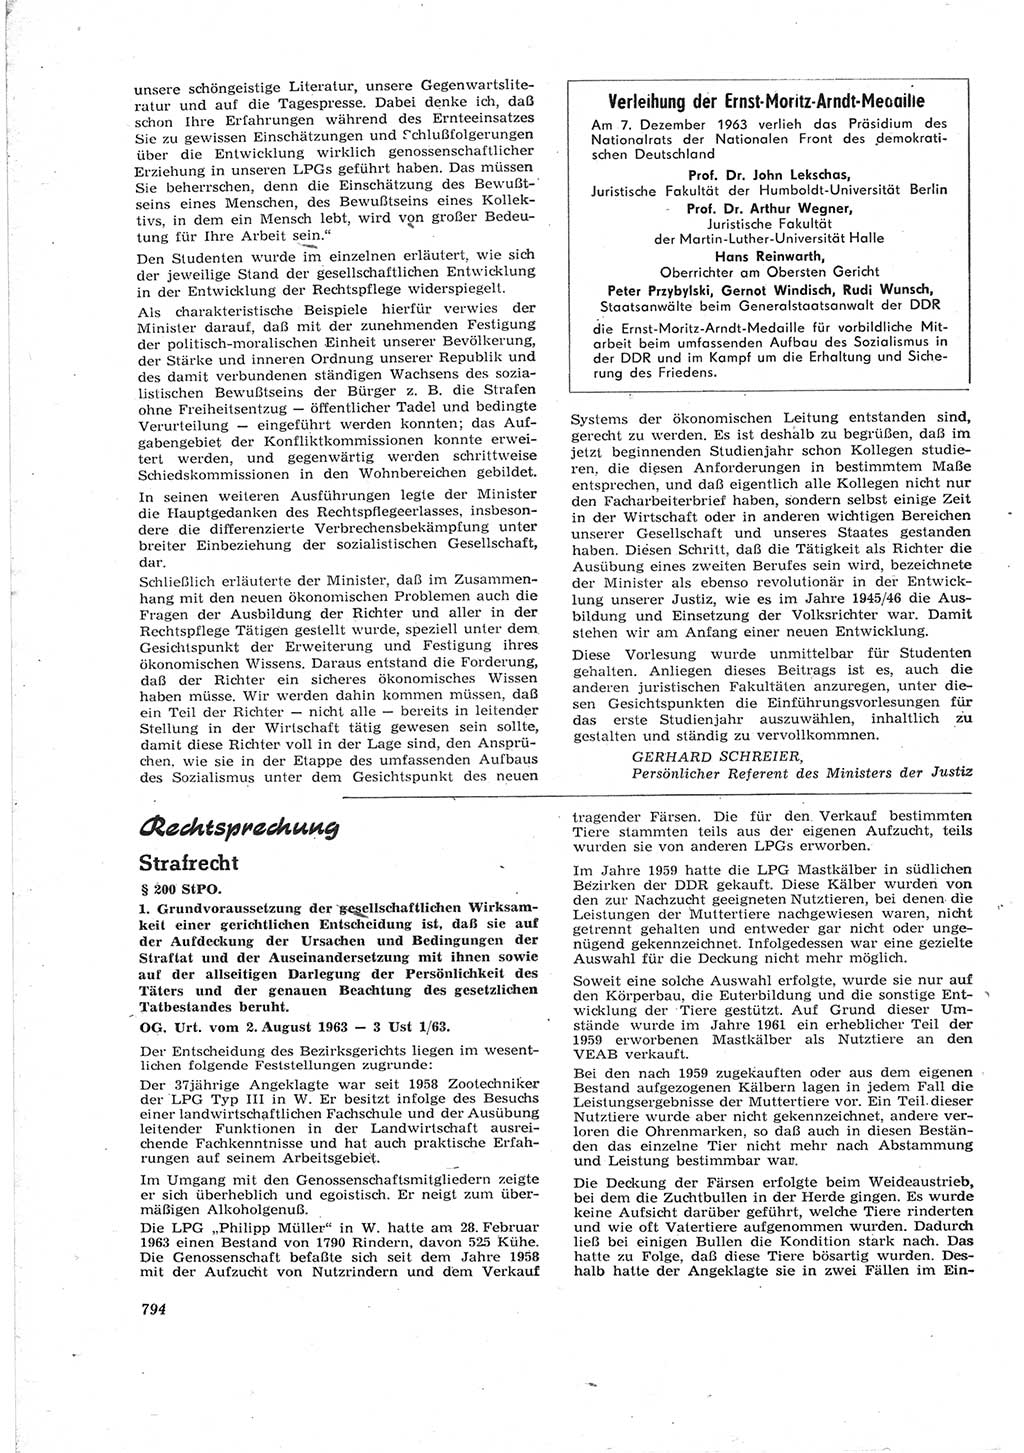 Neue Justiz (NJ), Zeitschrift für Recht und Rechtswissenschaft [Deutsche Demokratische Republik (DDR)], 17. Jahrgang 1963, Seite 794 (NJ DDR 1963, S. 794)